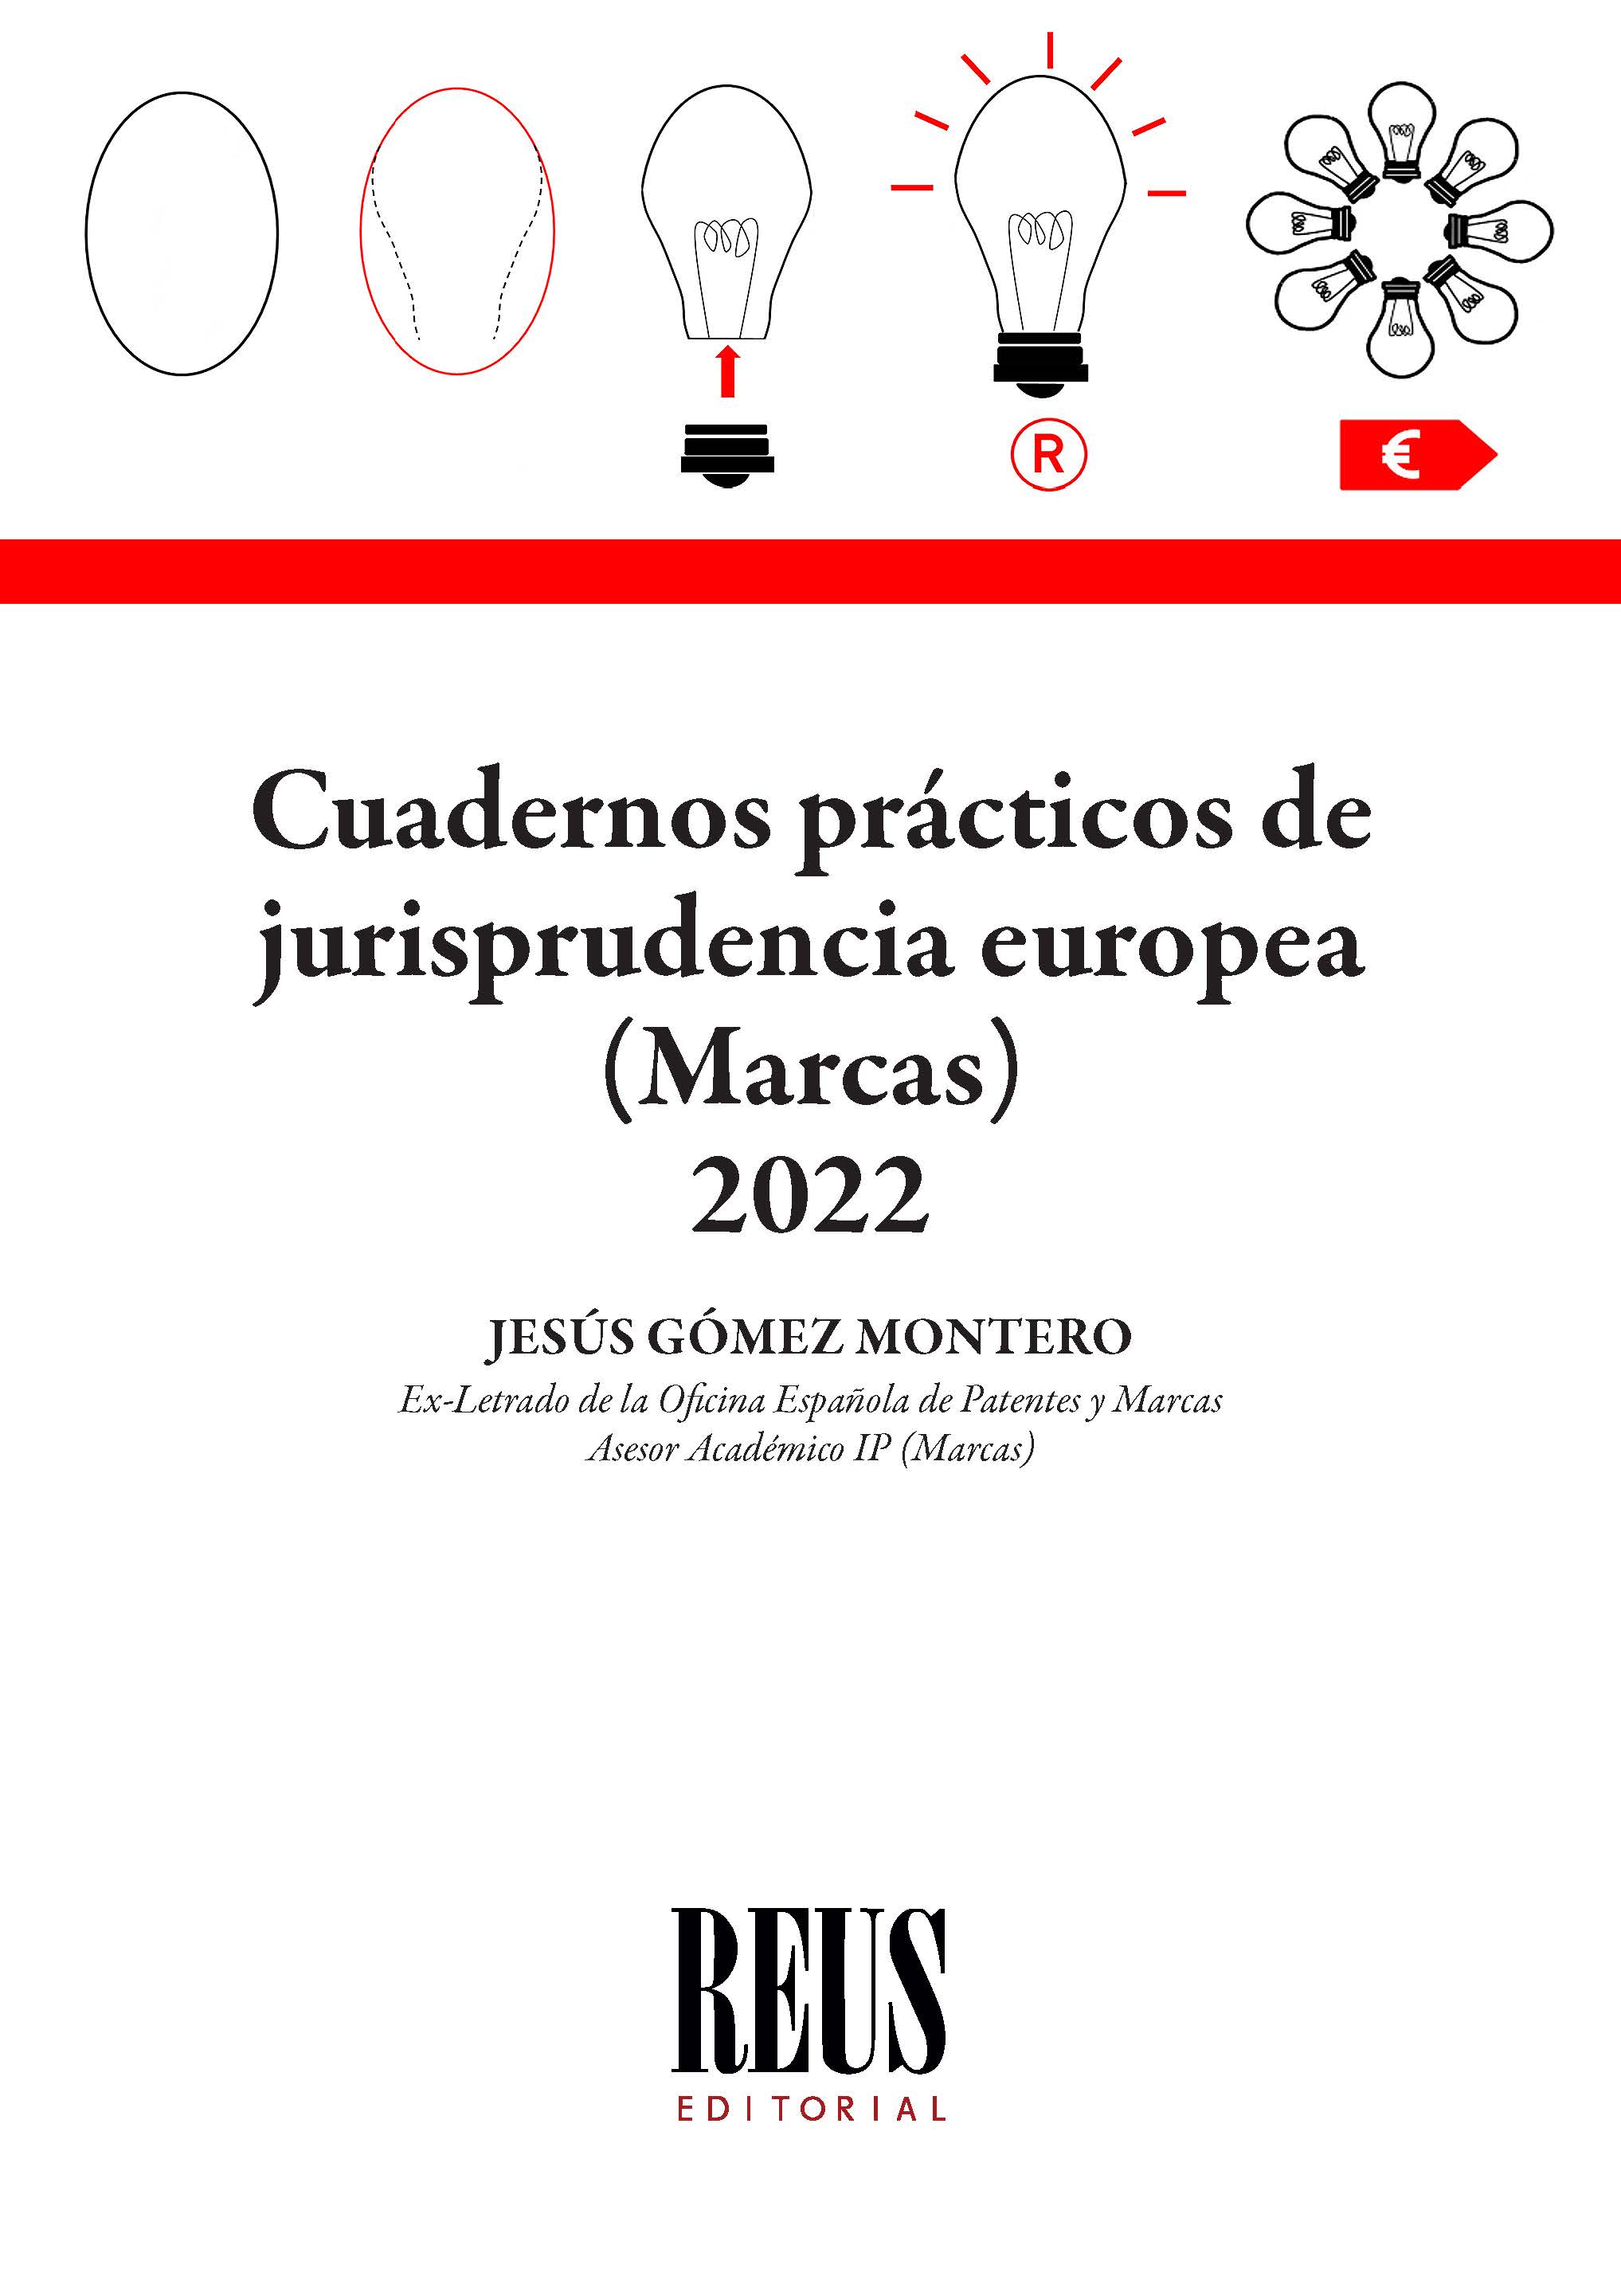 Cuadernos prácticos de jurisprudencia europea (Marcas) 2022